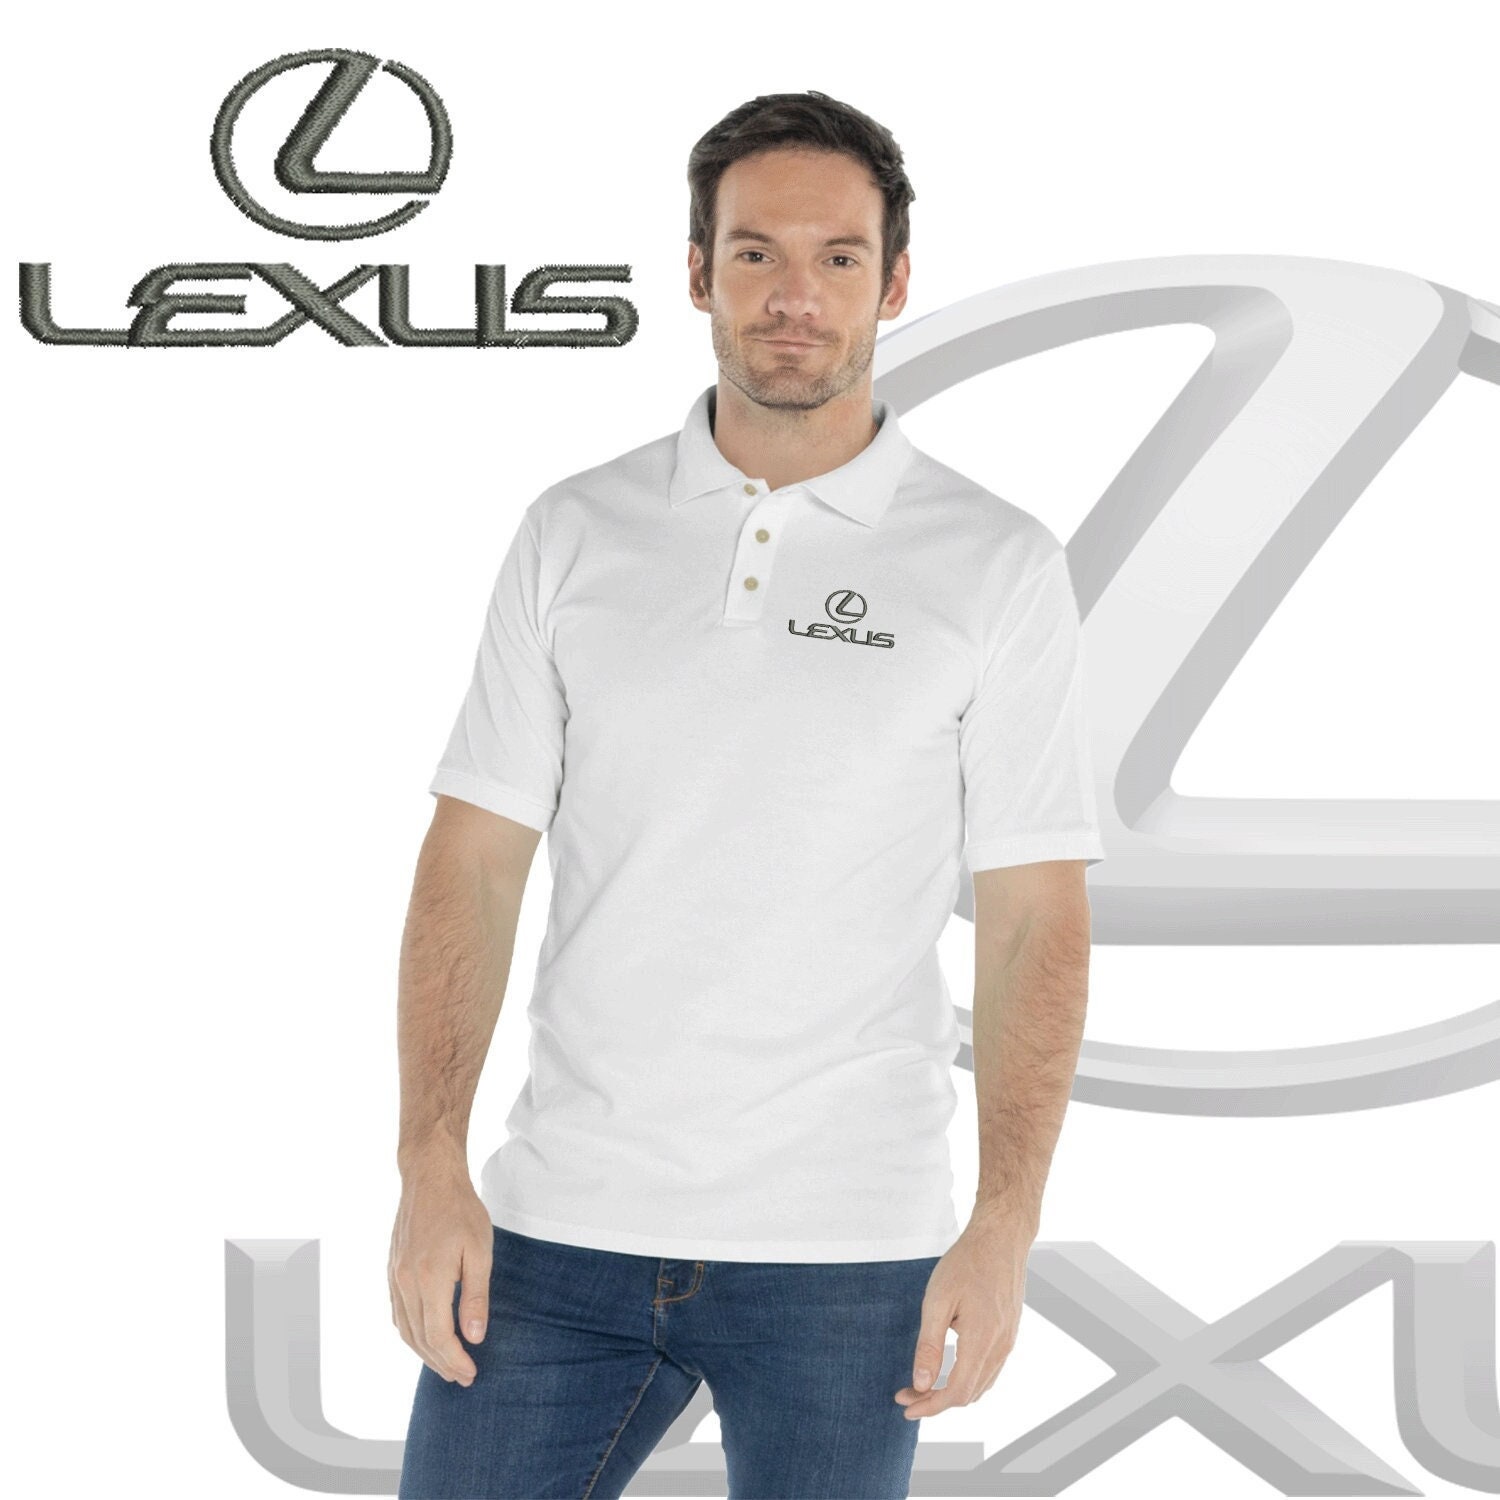 Lexus Logo Polo Embroidery Shirt Men